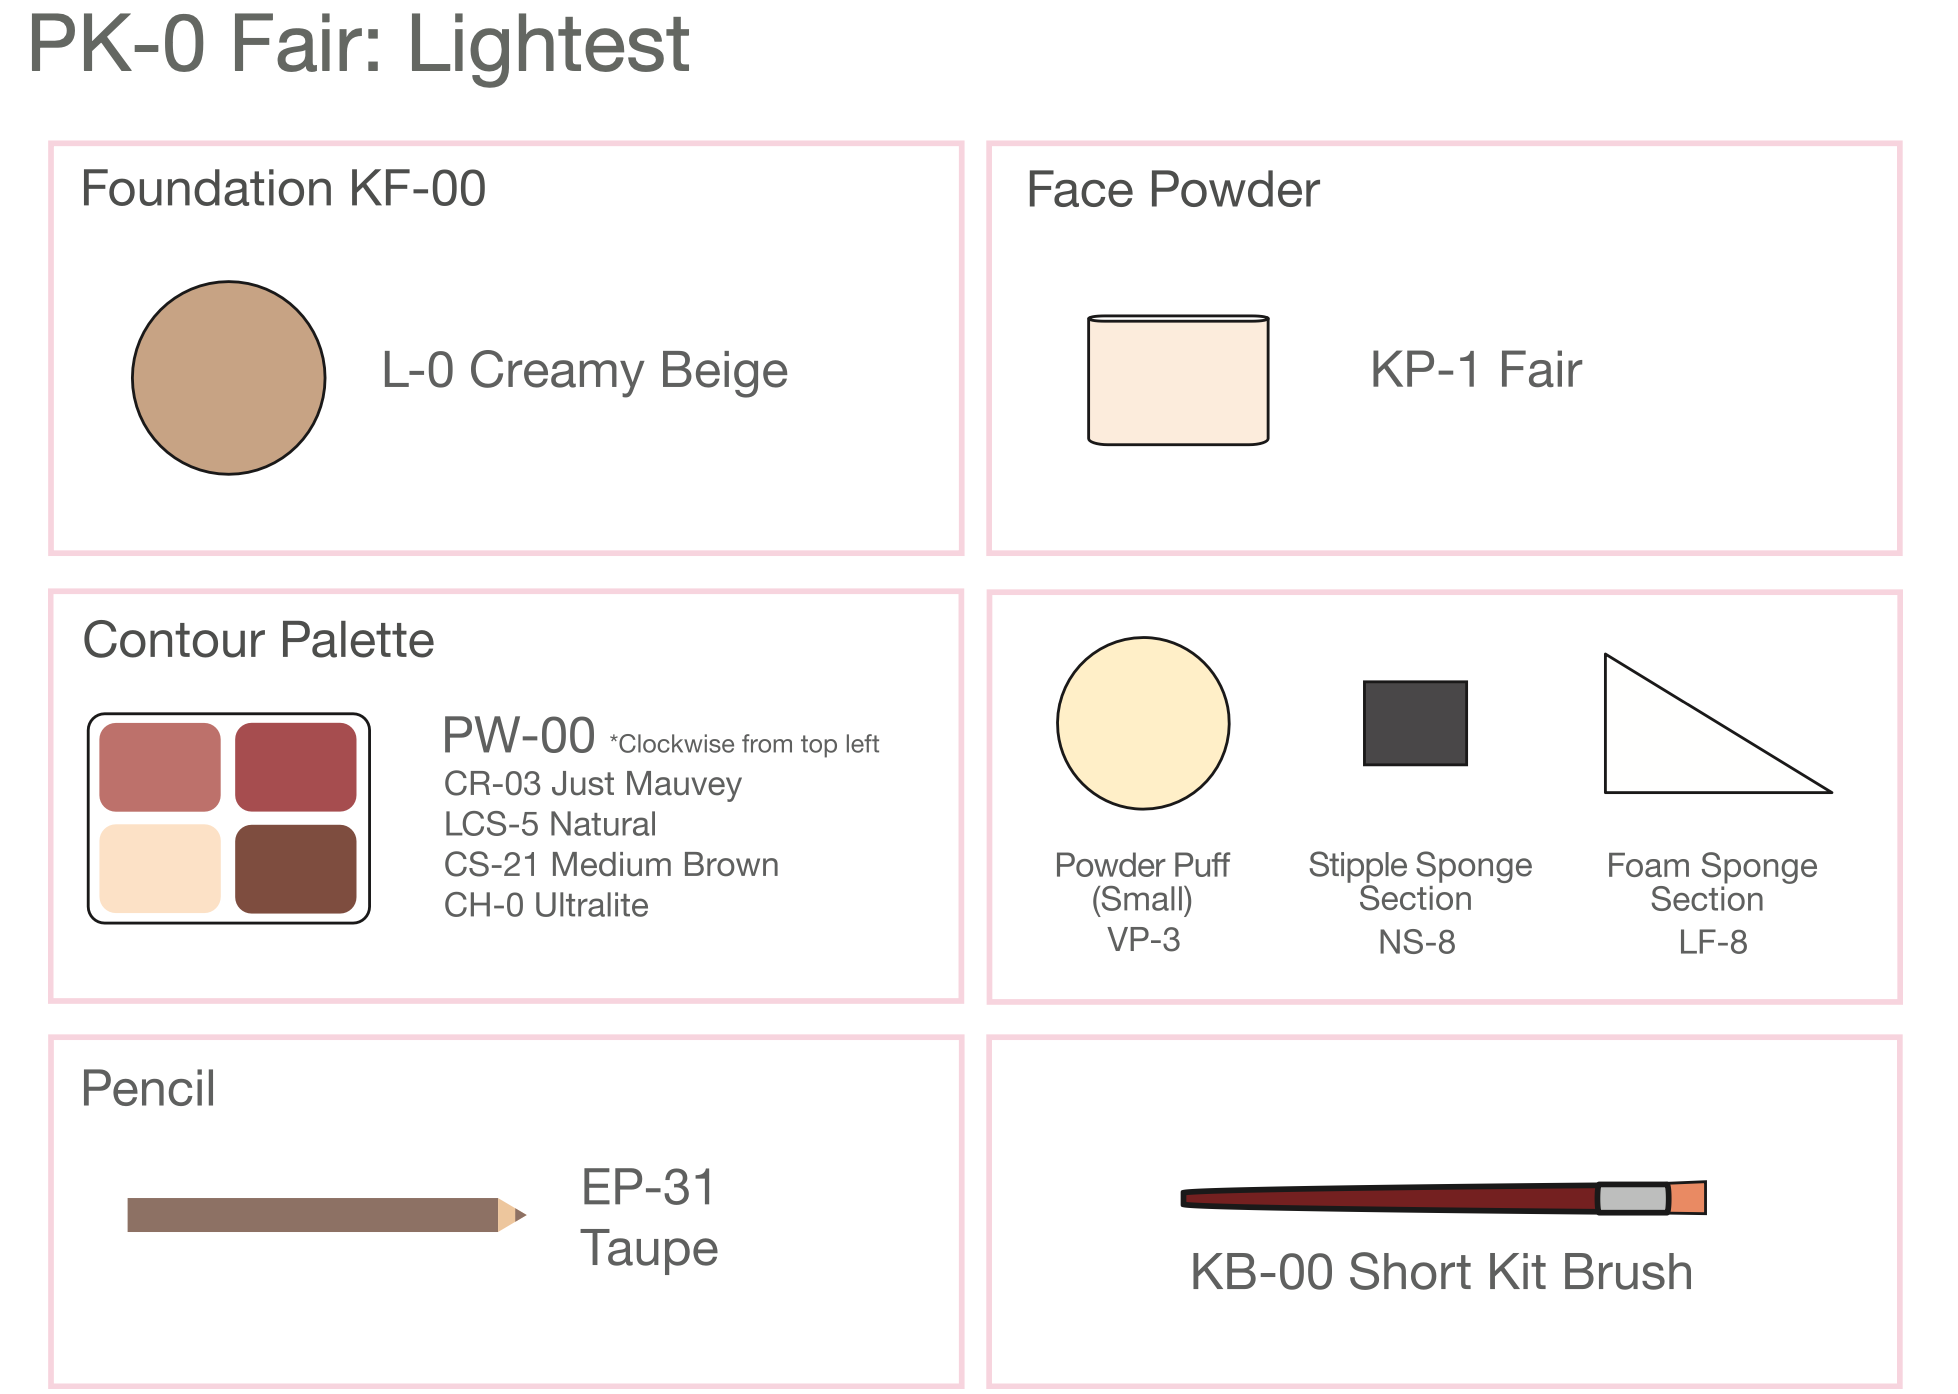 Ben Nye Personal Creme Makeup Kit